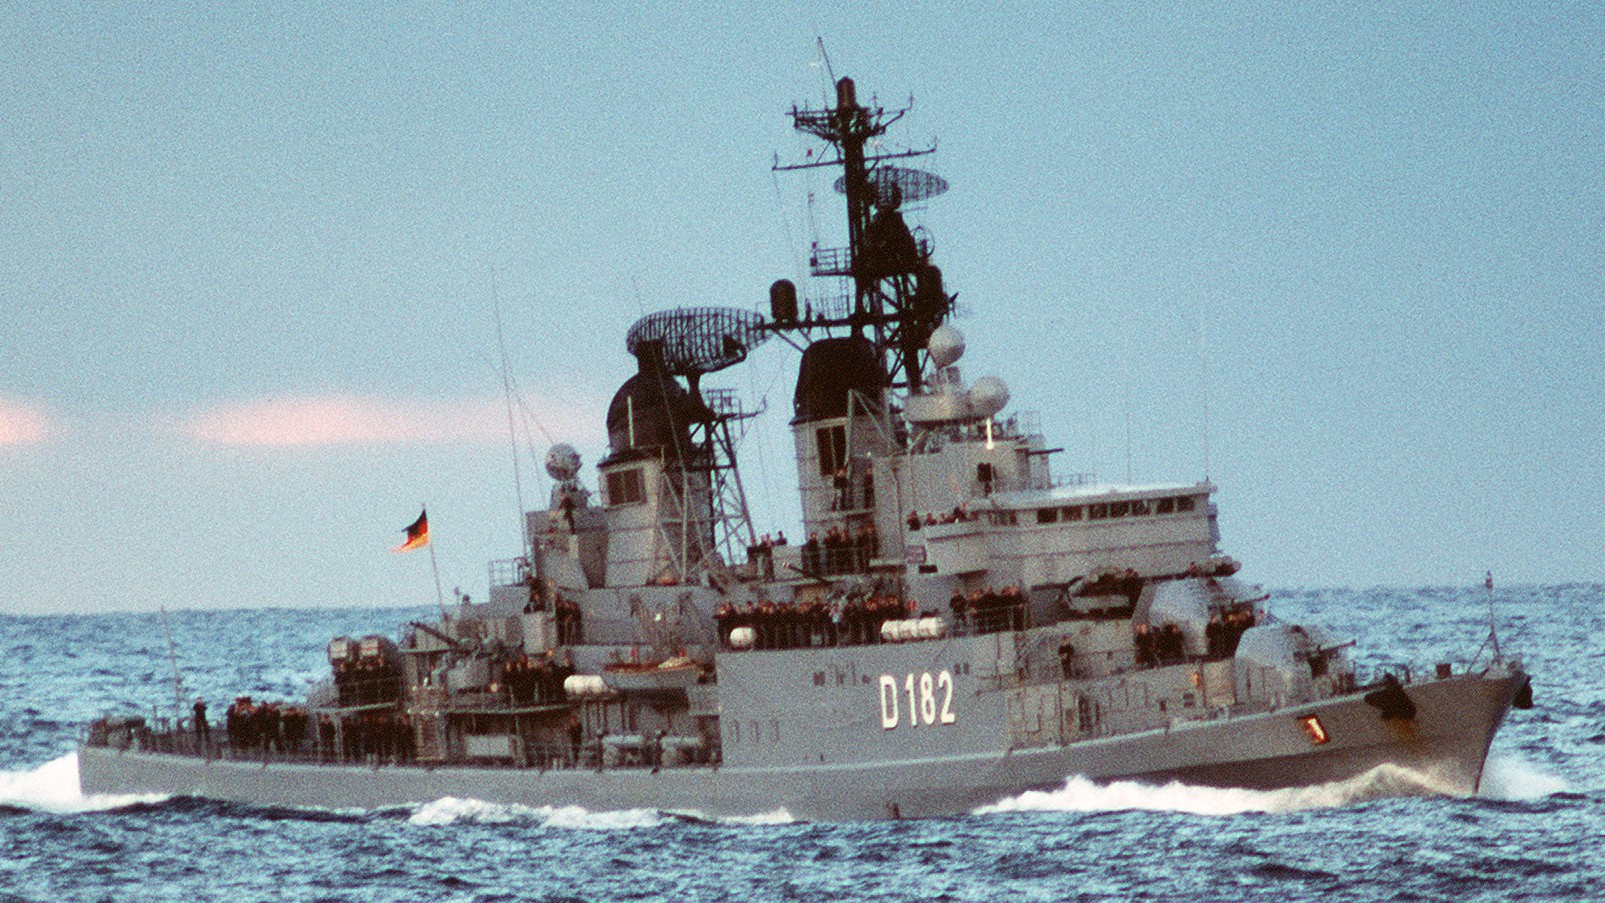 d-182 fgs schleswig-holstein type 101a hamburg class destroyer german navy 07